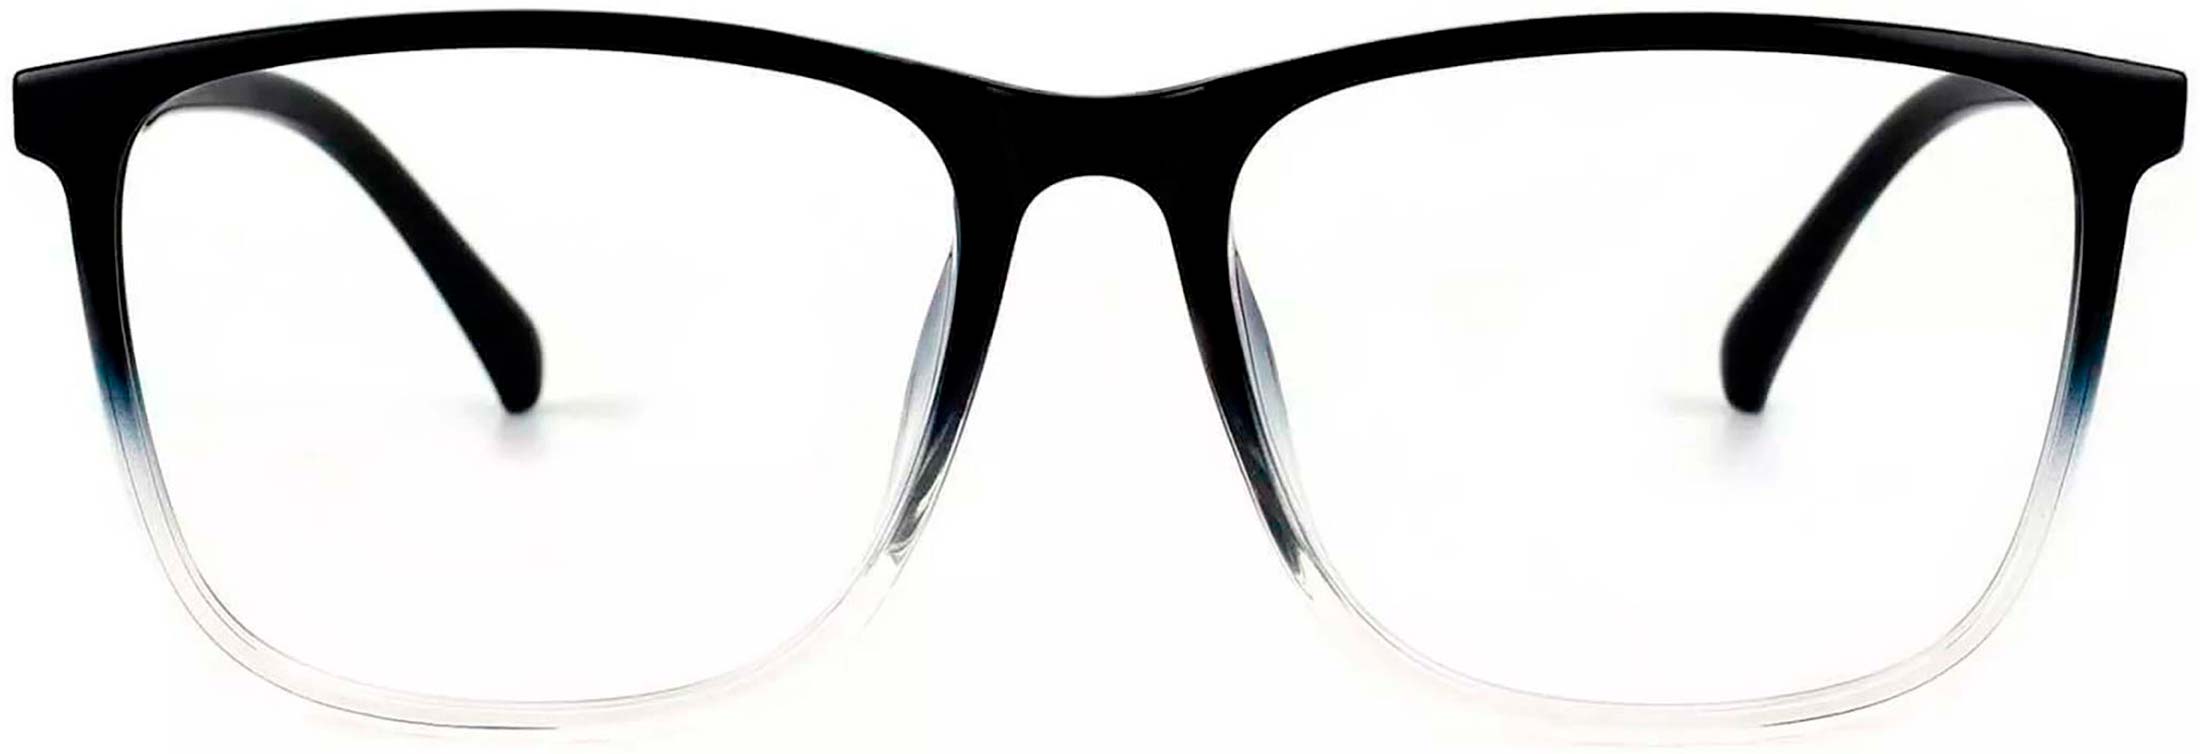 my glasses